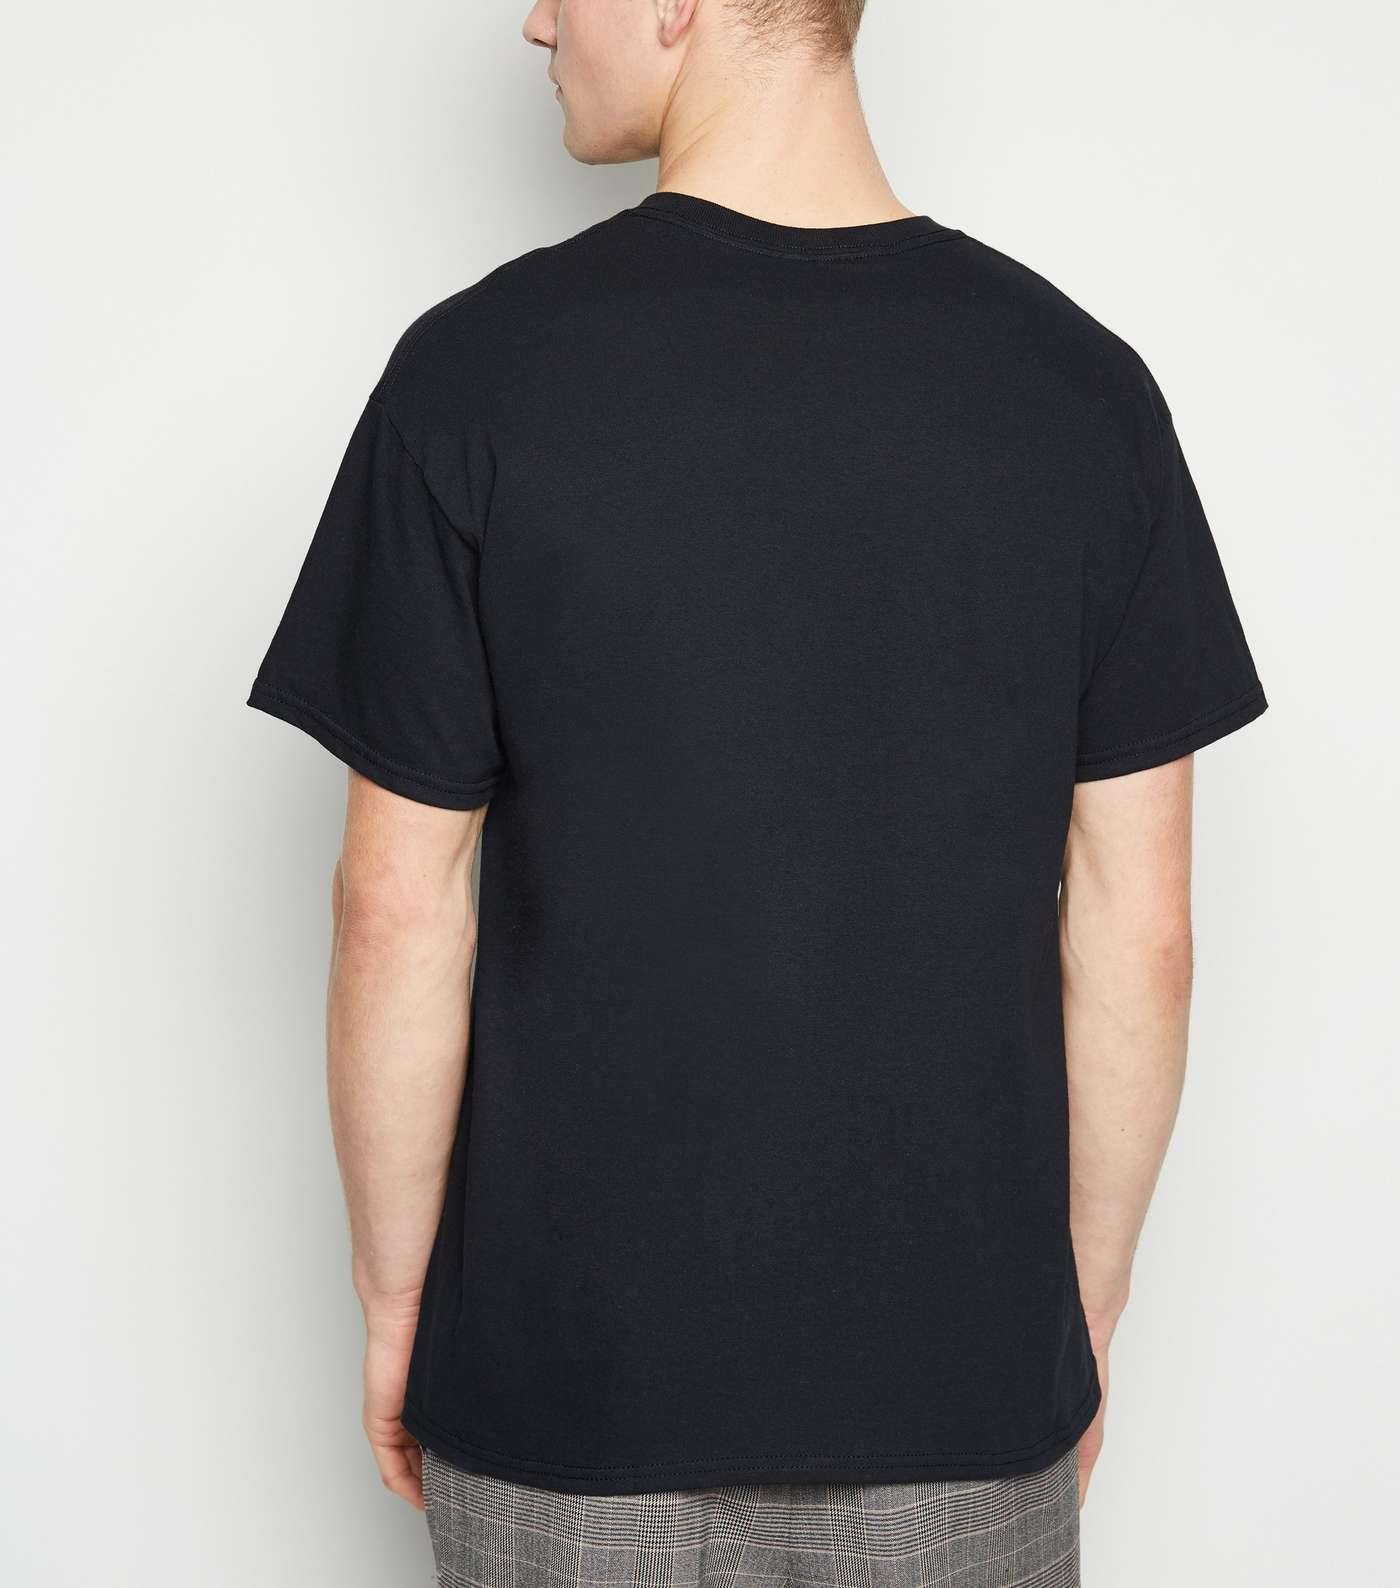 Black Reflective Slogan Oversized T-Shirt Image 3